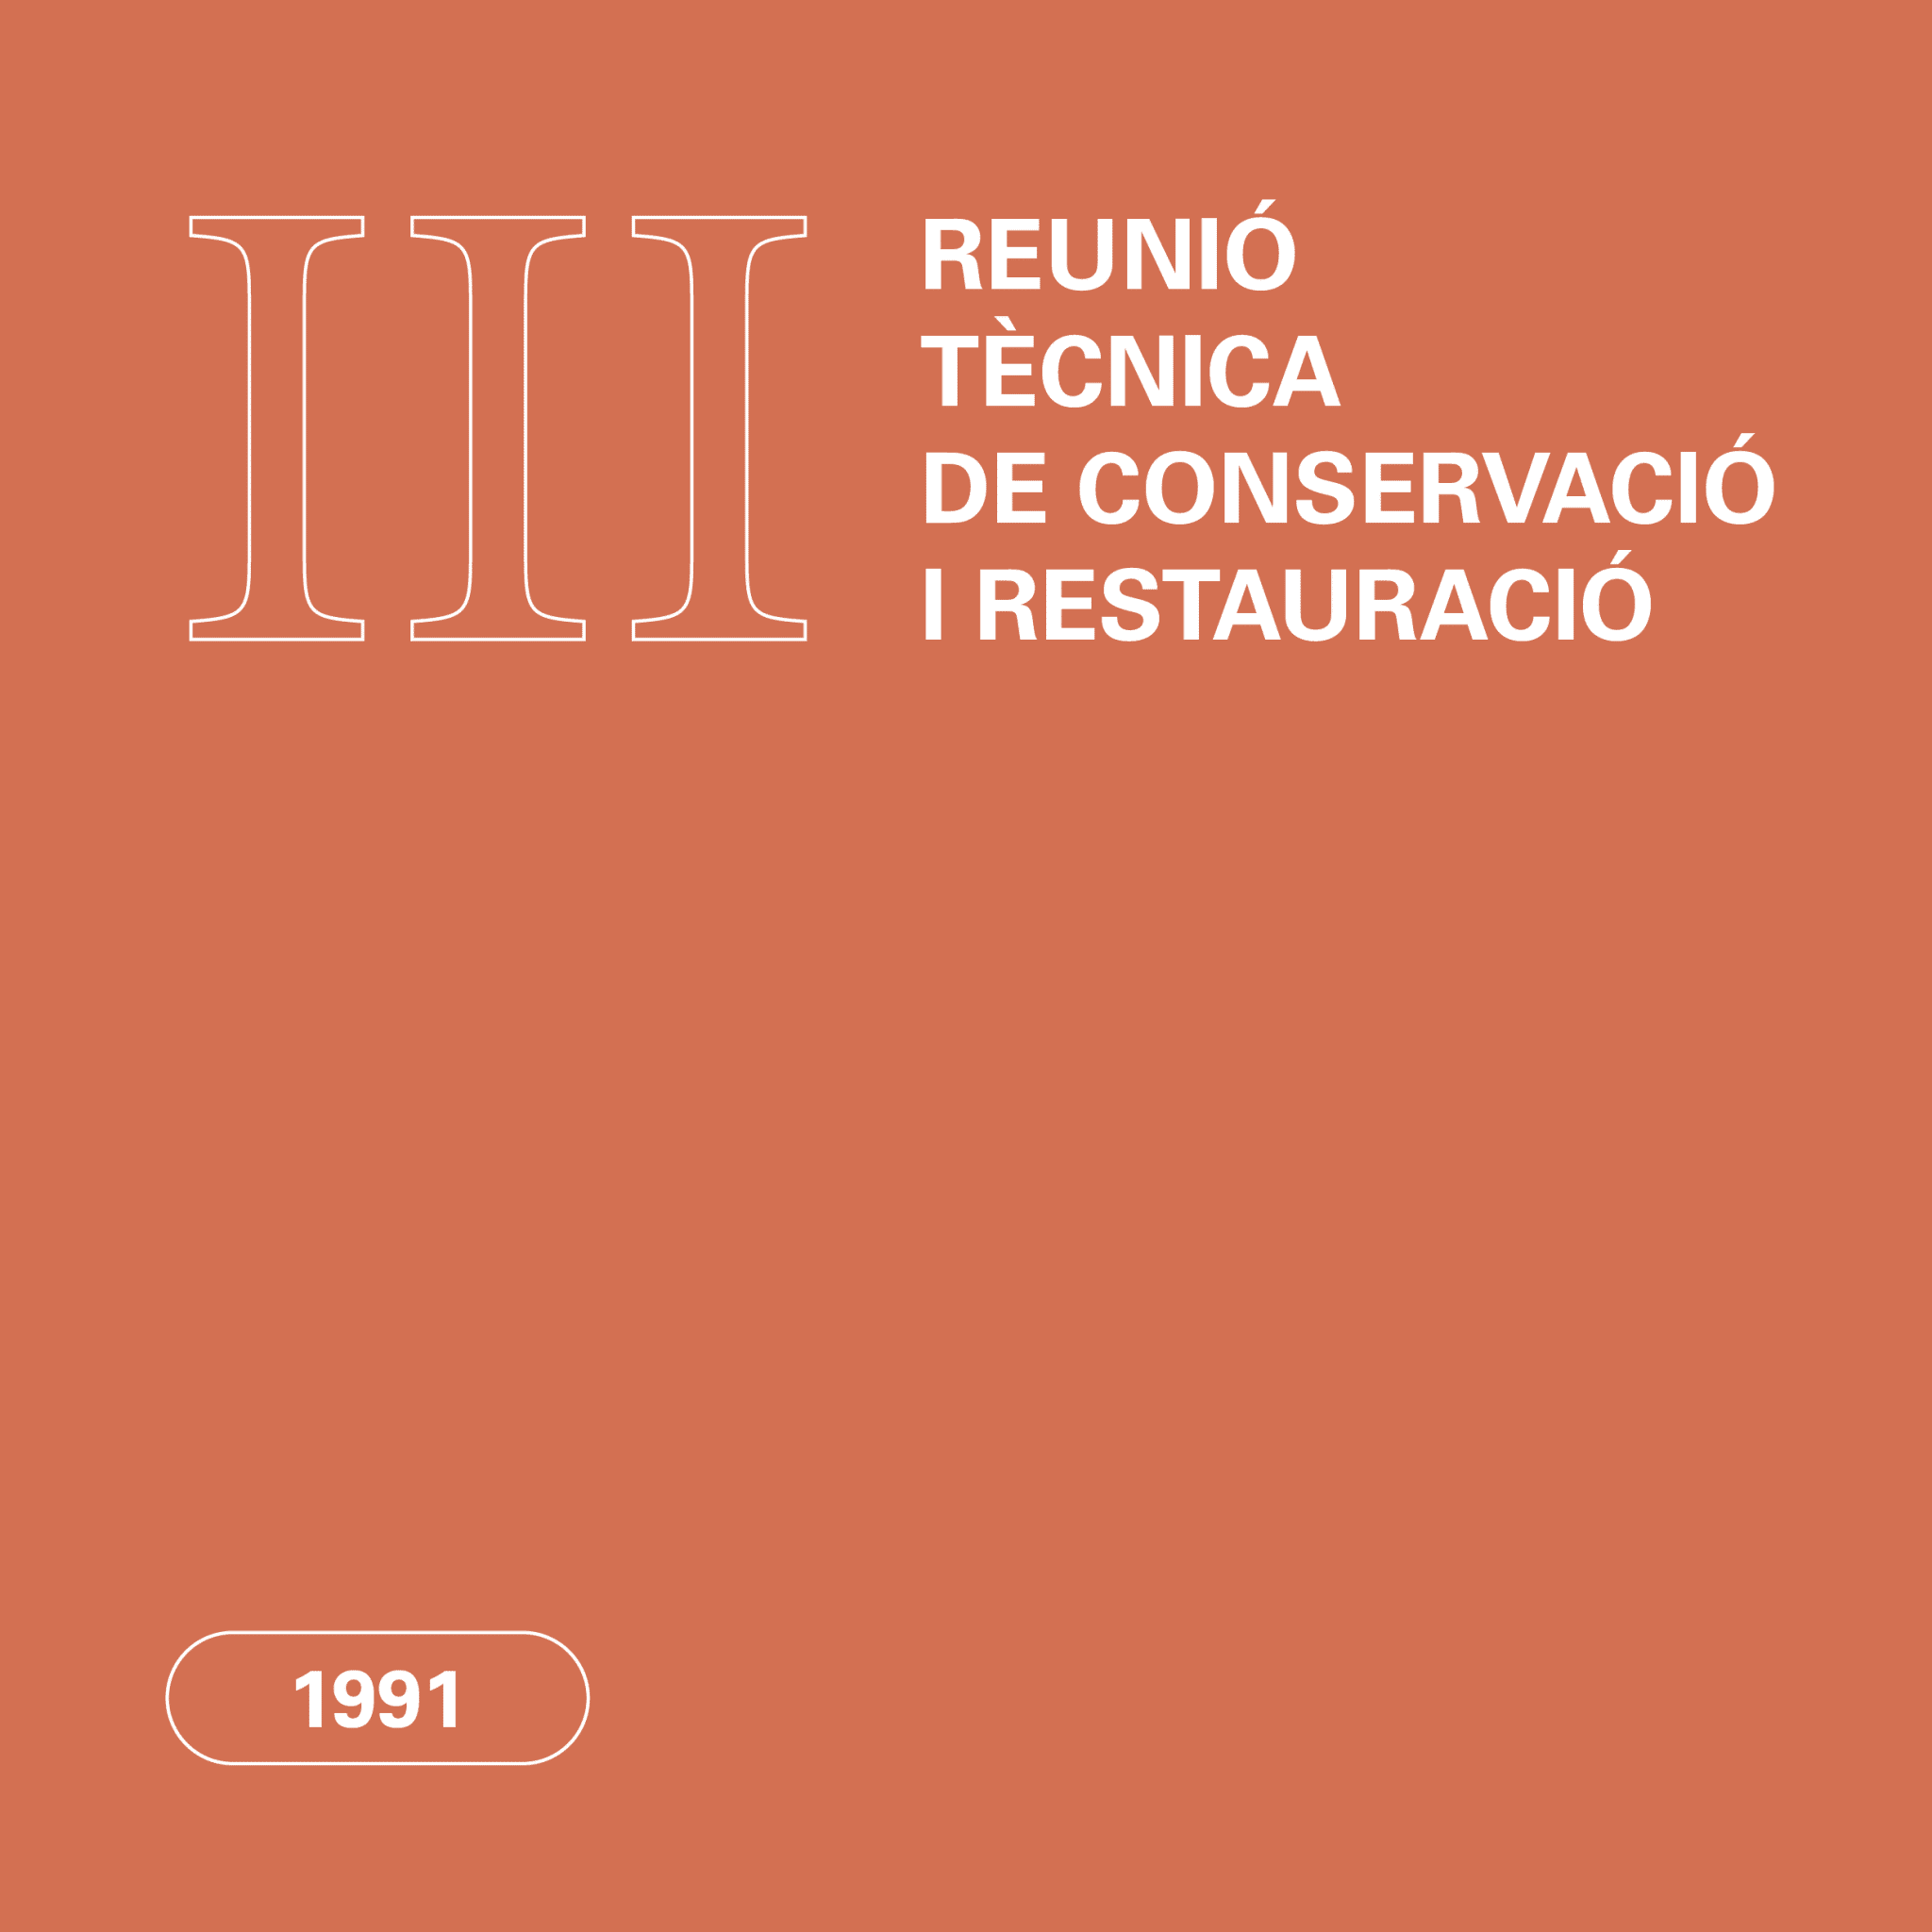 reunió tècnica 1991 conservació restauració CRAC